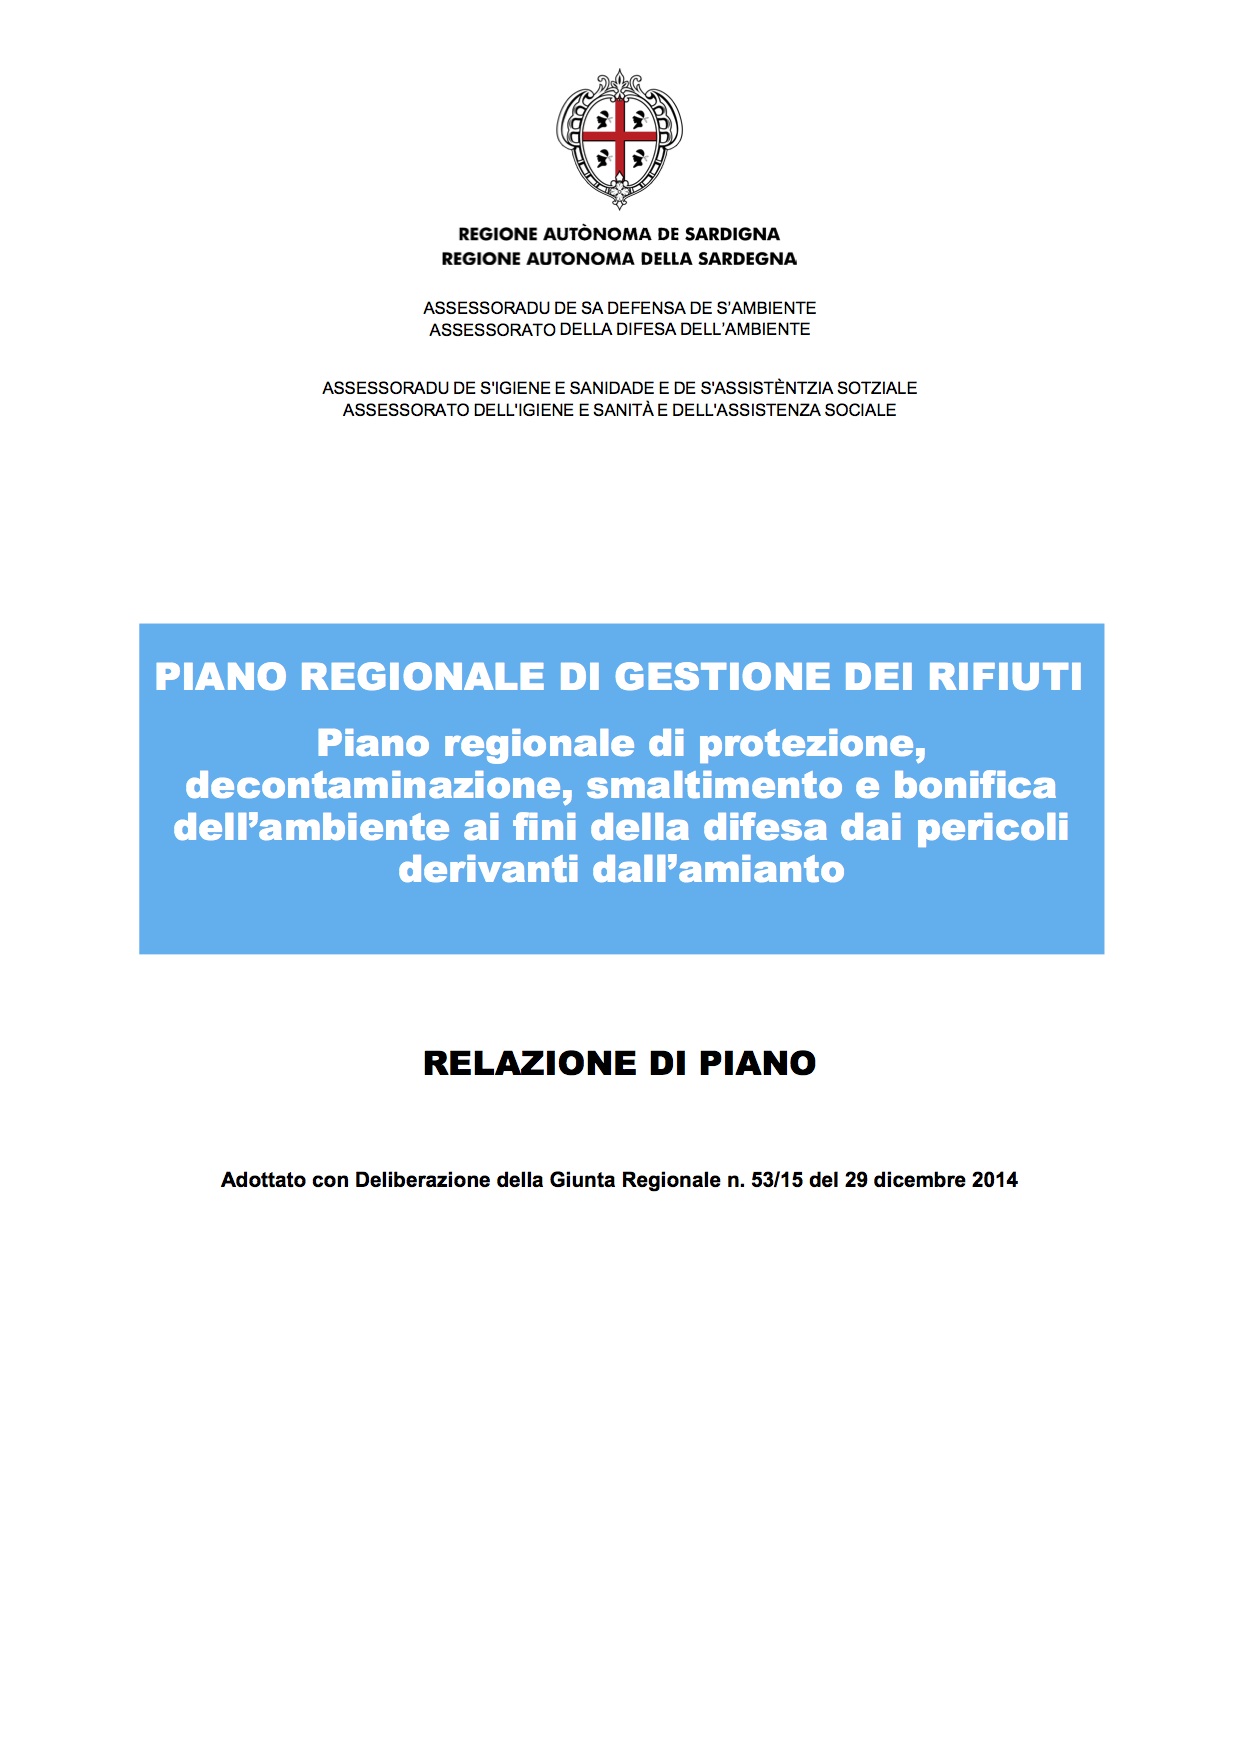 Piano regionale di gestione dei rifiuti in Sardegna adottato con deliberazione della Giunta Regionale n.53/15 del 29 dicembre 2014: si allega la relazione sul piano.